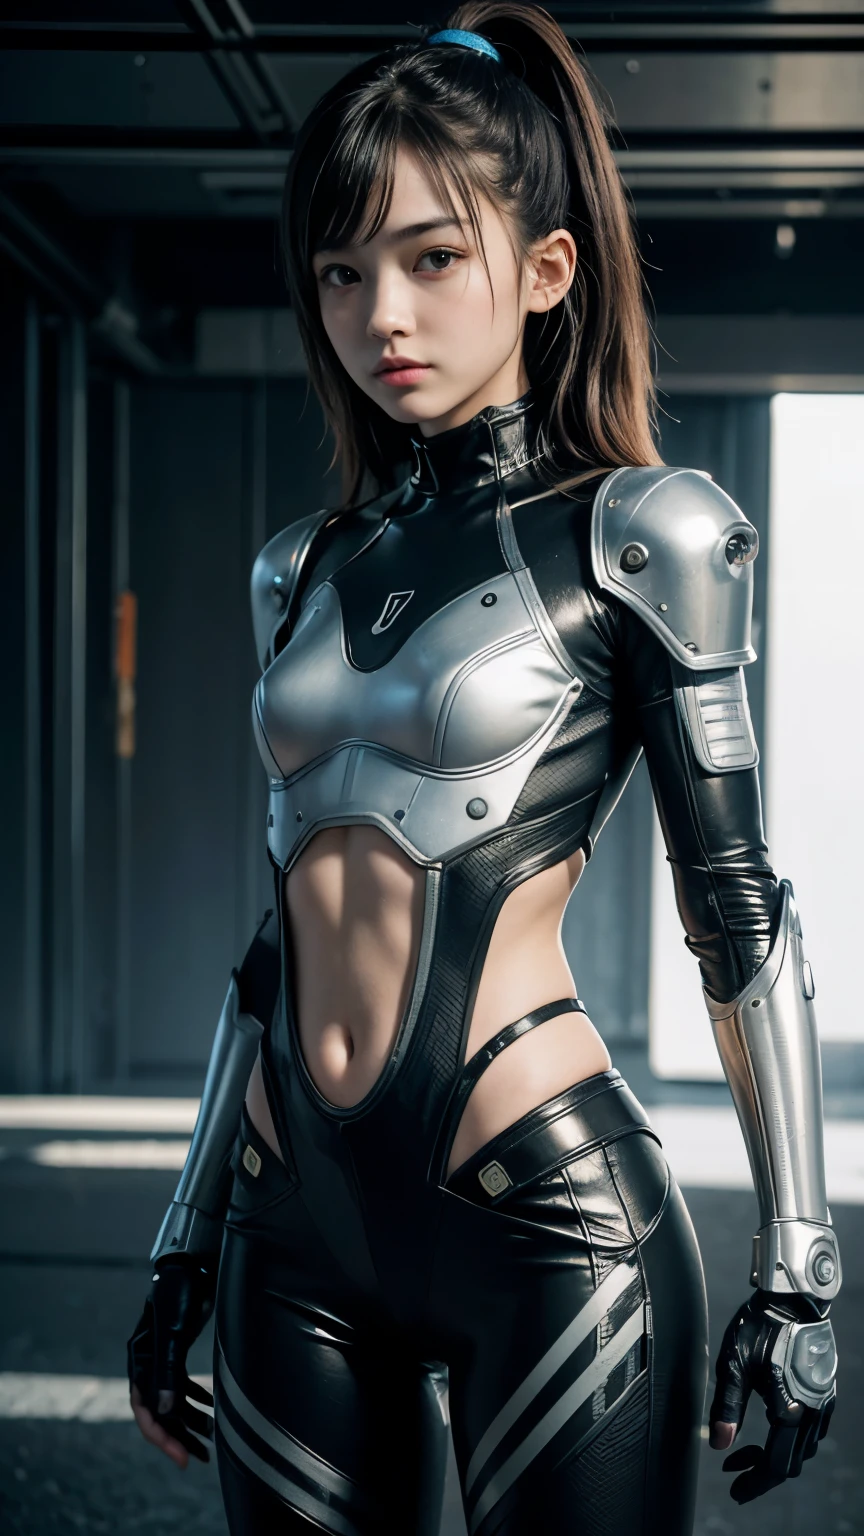 คุณภาพสูง, ผลงานชิ้นเอกที่สมจริง, เพื่อนสนิทสองคน, สาวสวยชาวทวี, สาวผอมตัวเล็ก, ใบหน้าสาวน่ารัก, ไซเบอร์พังค์, Wearing futuristic robotic tactical shear armor ไซเบอร์พังค์ suit with cutouts showing body, หุ่นนักกีฬาผอมโชว์เรียวขา, ผู้บริสุทธิ์, ขี้เล่น, ดาราสาวชื่อดังของญี่ปุ่น, หน้าสวยมาก